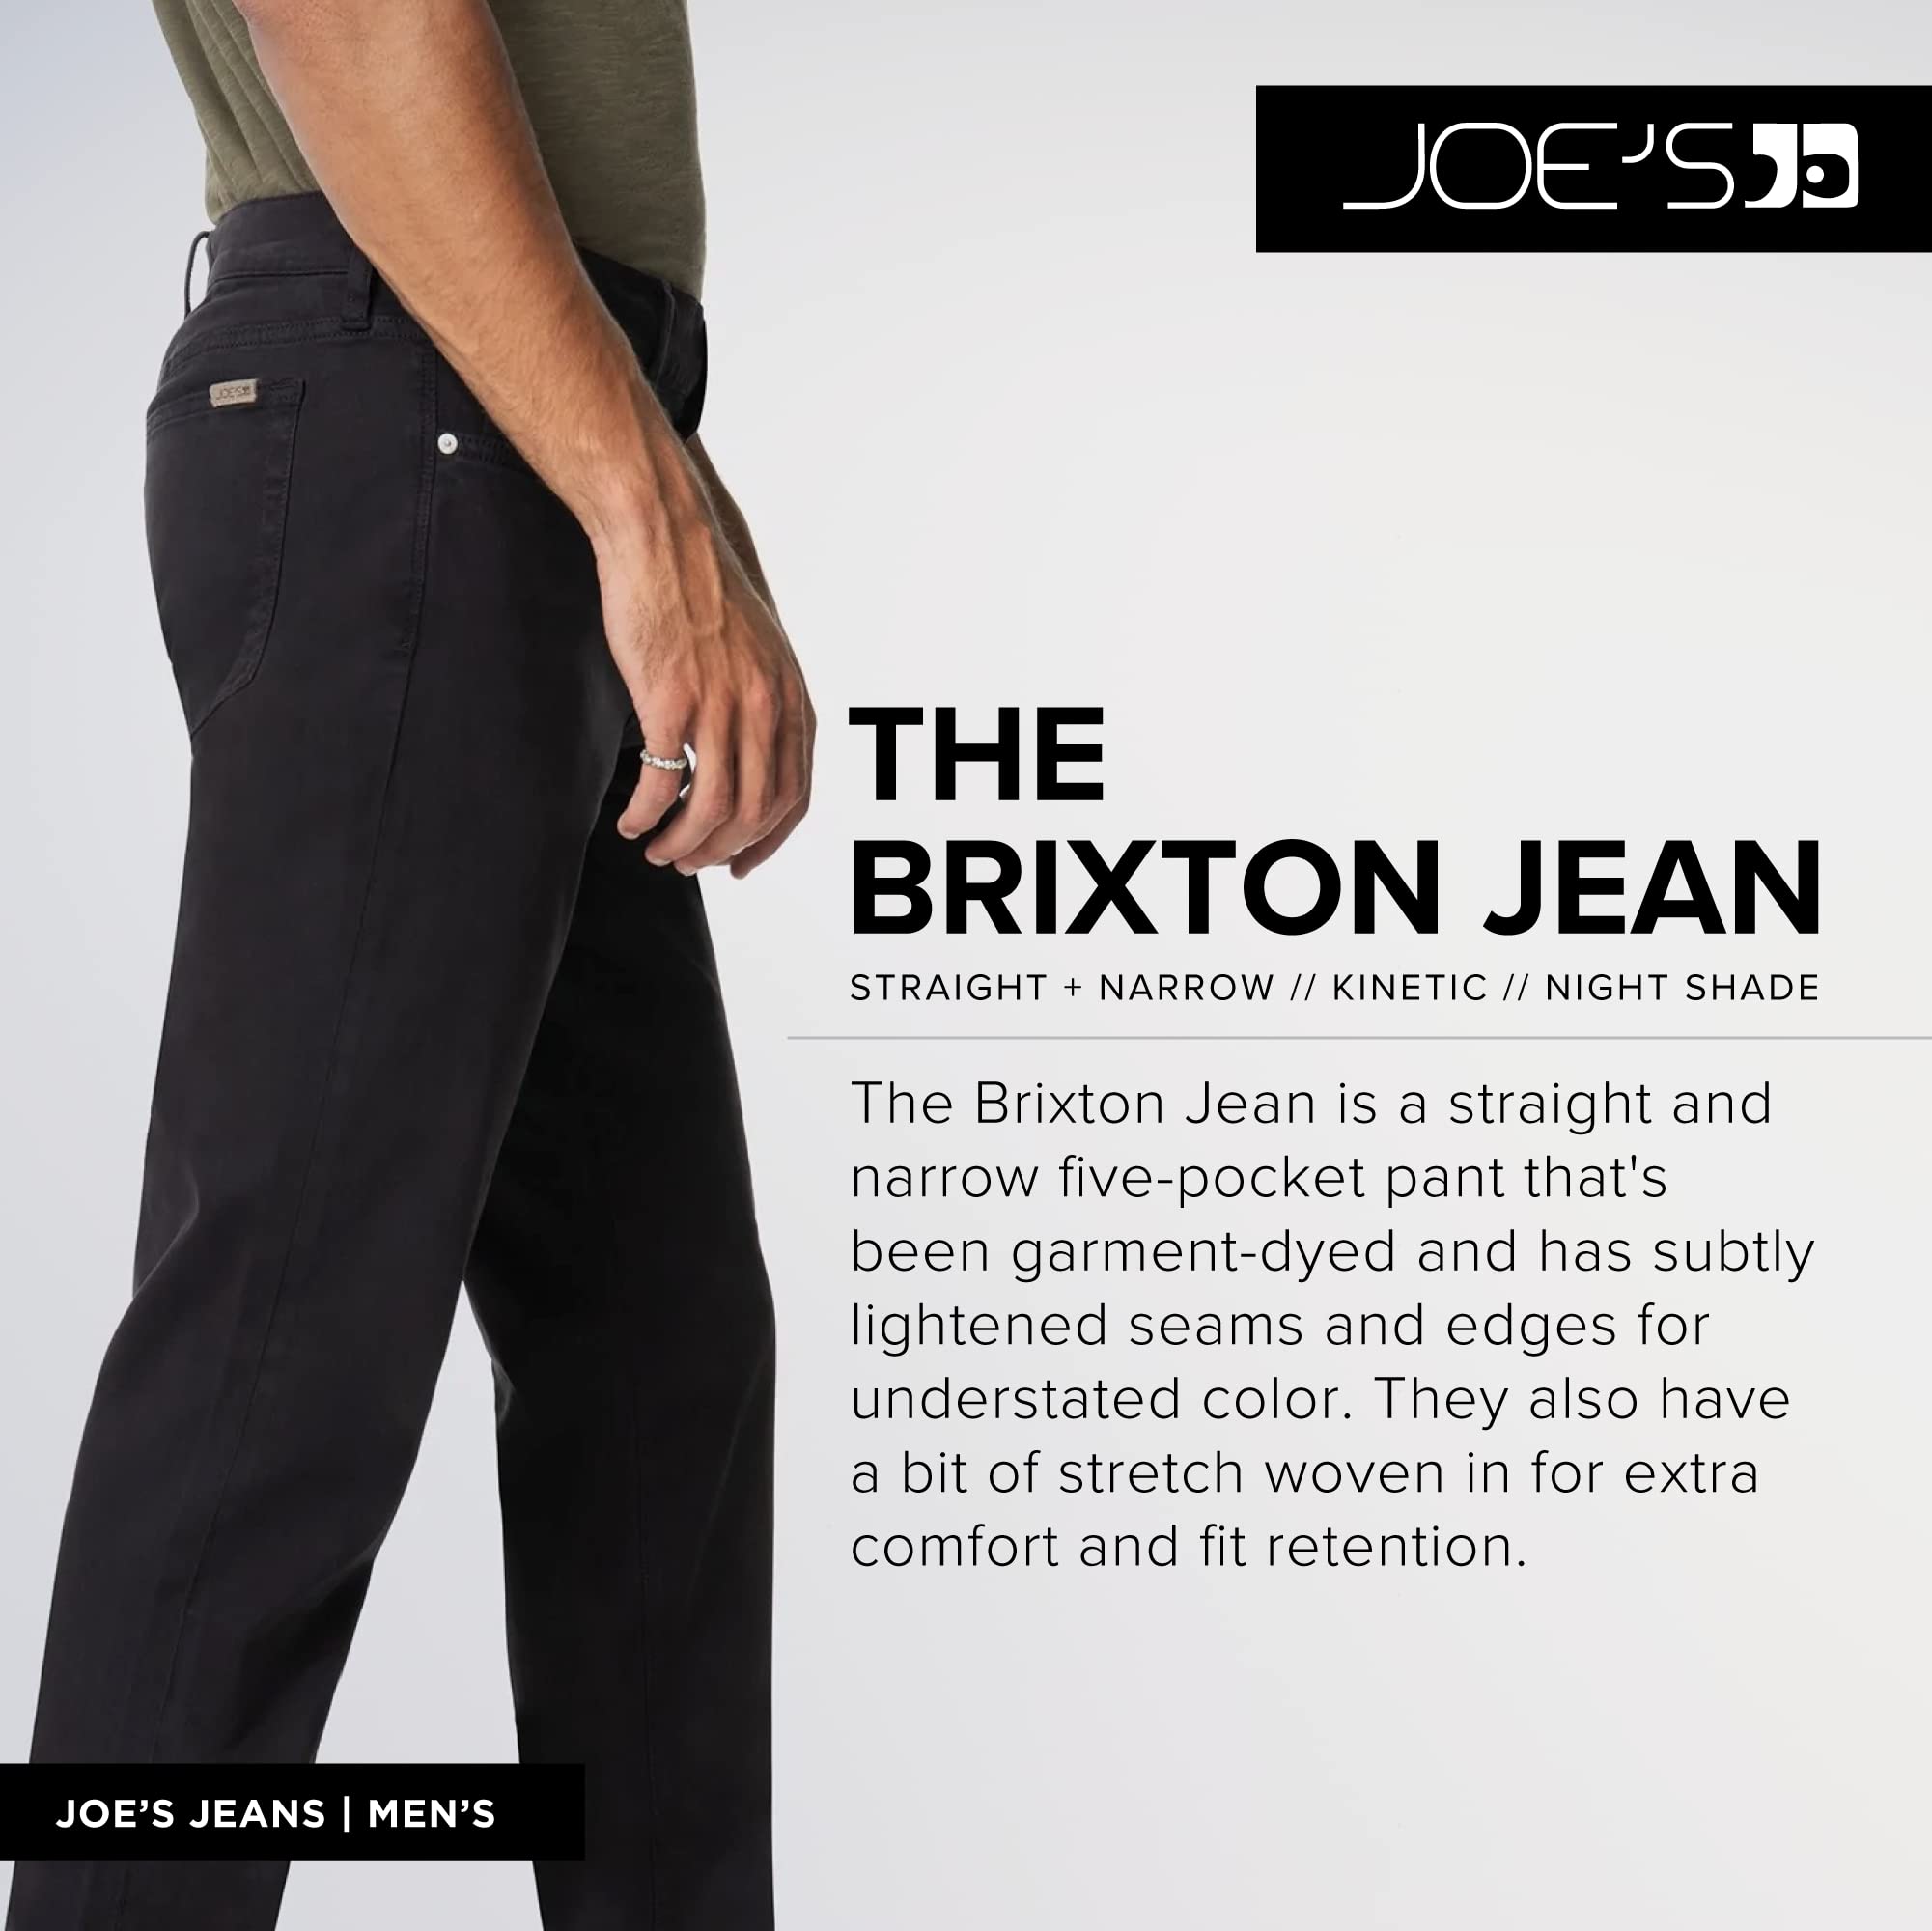 Joe's Jeans Men's Fashion Brixton Straight and Narrow